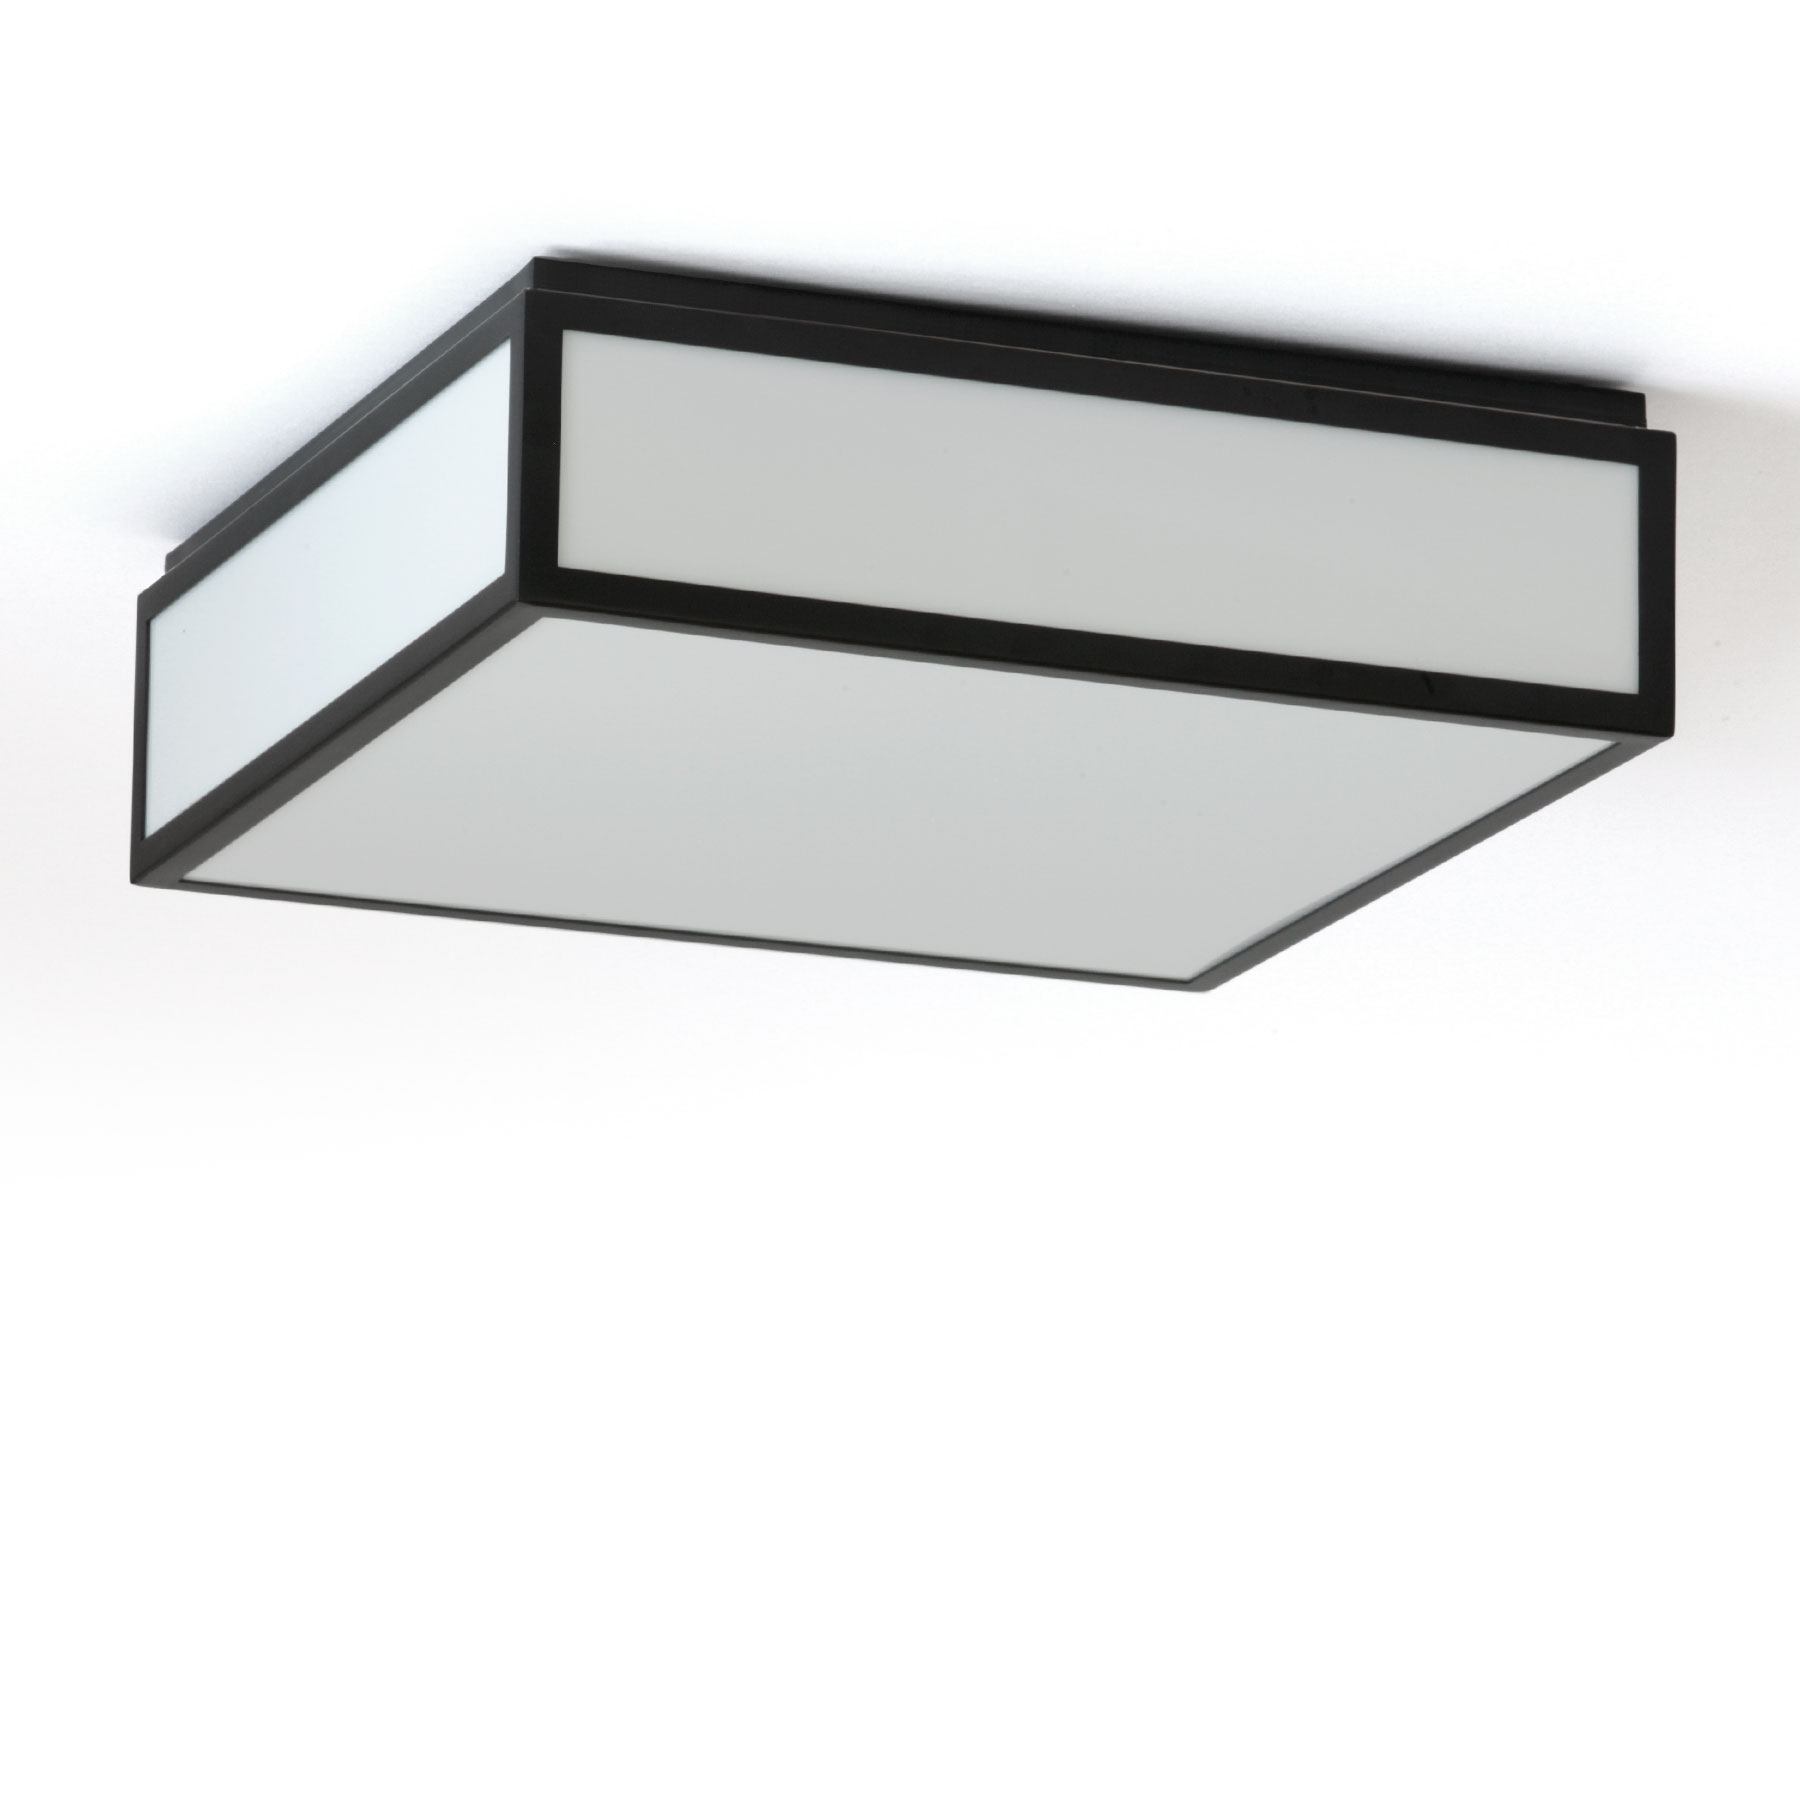 Quadratische LED-Deckenleuchte schwarz-weiß, auch für Badezimmer, 30 cm: Die flache, quadratische Deckenleuchte mit schwarz akzentuierten Kanten – mit IP44 auch für Badezimmer